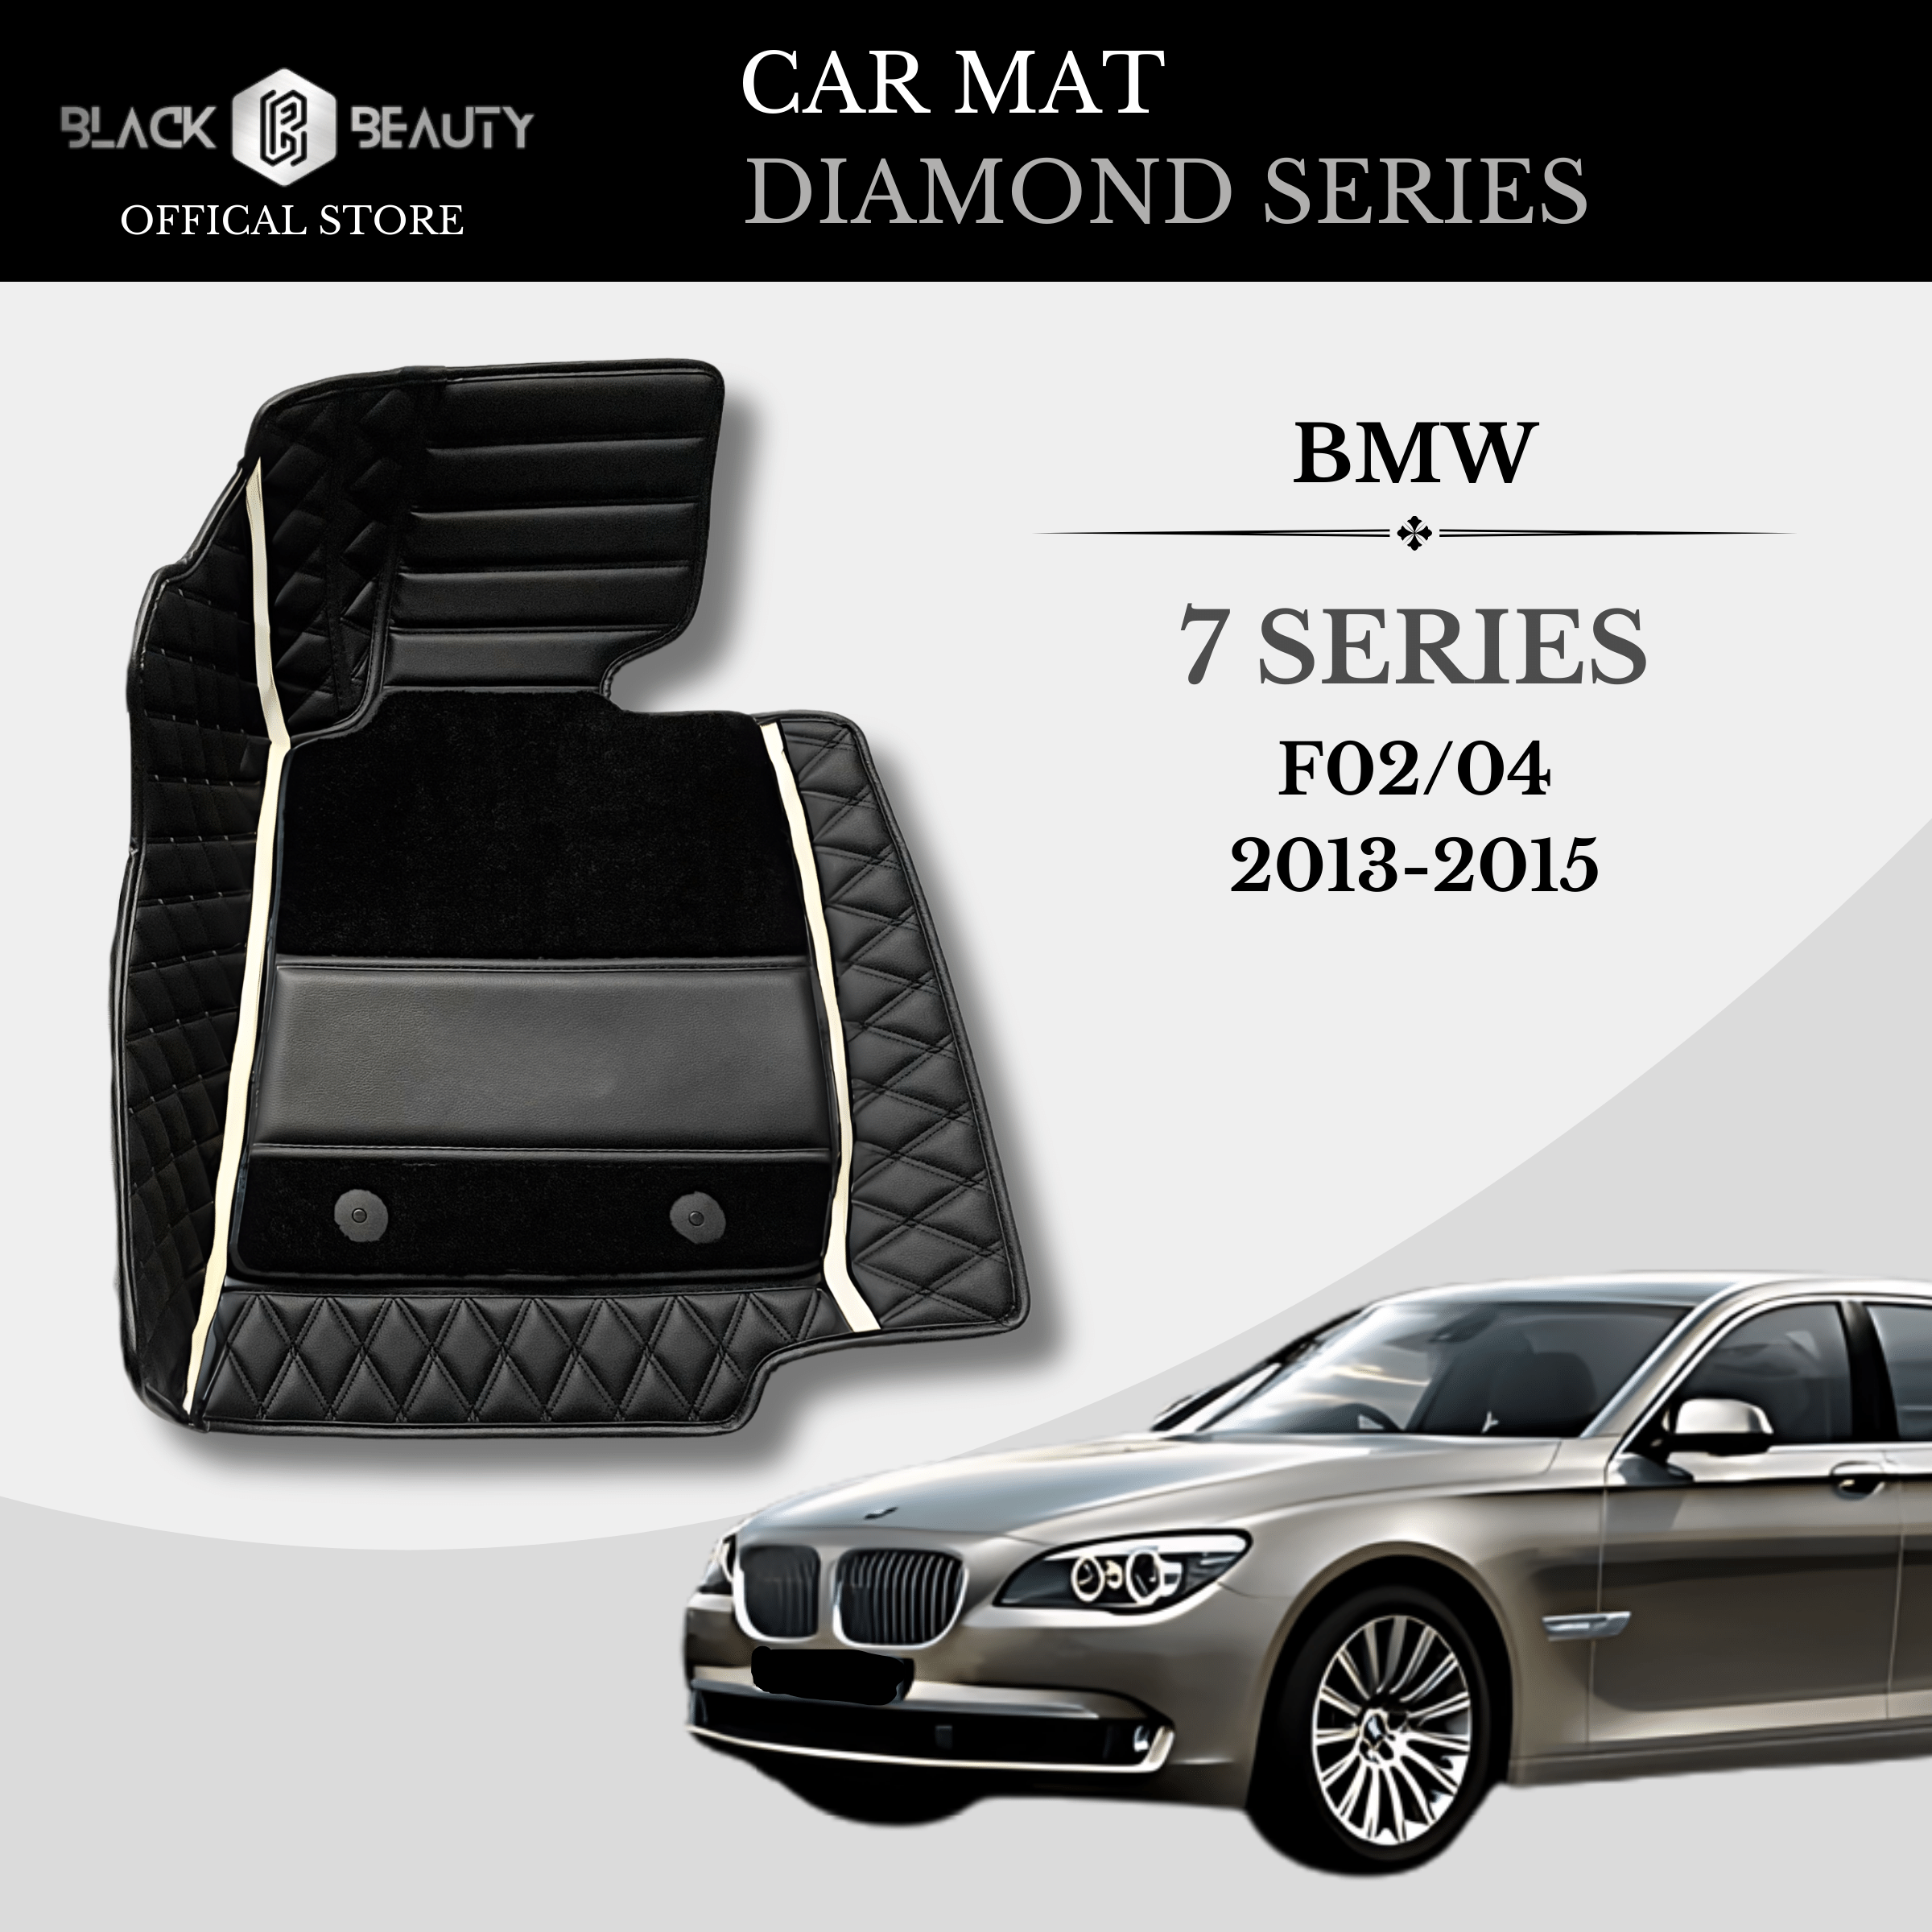 BMW 7 Series F02/ F04 (2013-2015) - Diamond Series Car Mat